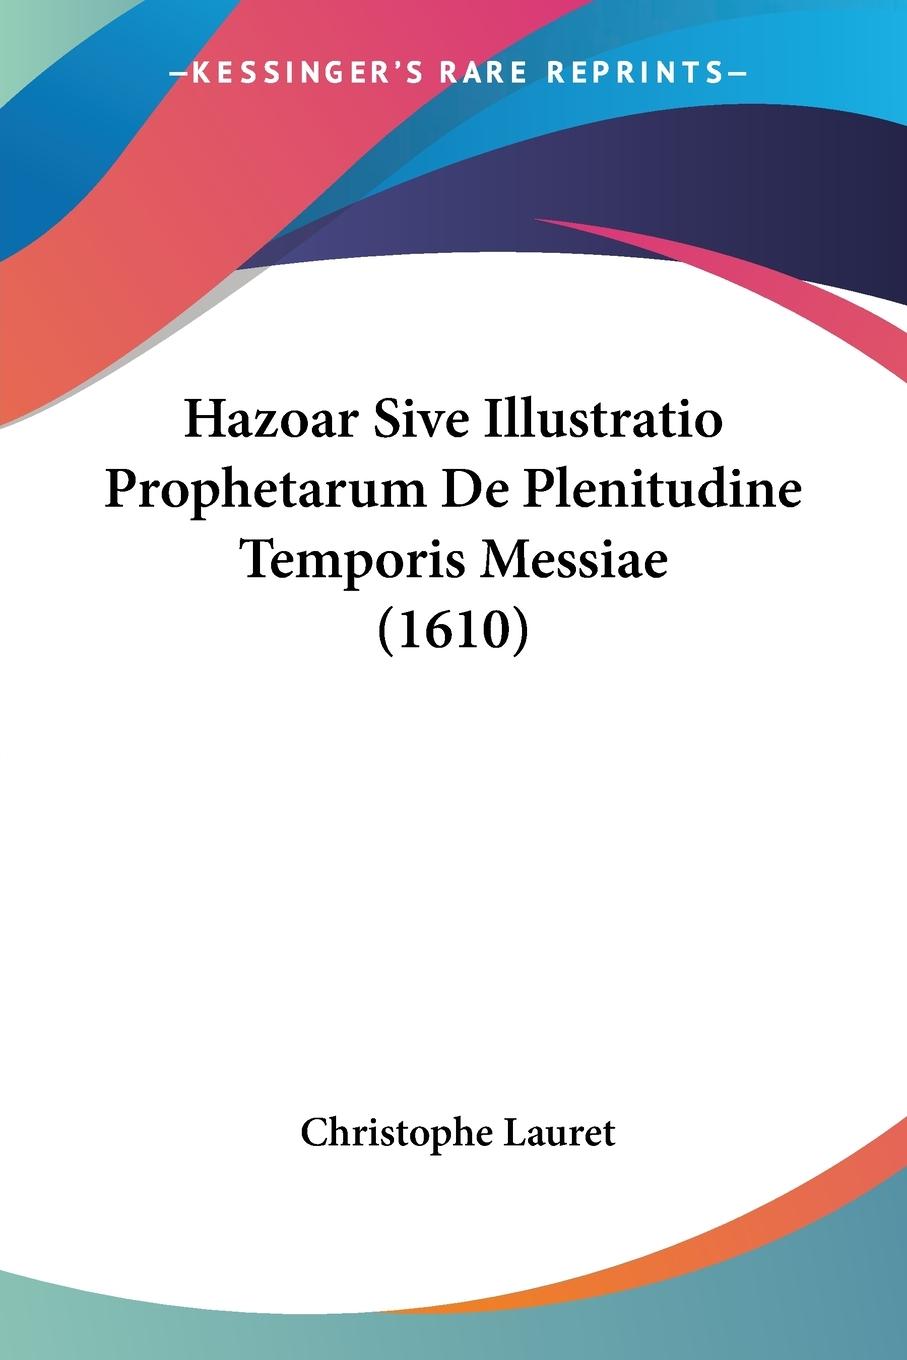 Hazoar Sive Illustratio Prophetarum De Plenitudine Temporis Messiae (1610) - Lauret, Christophe